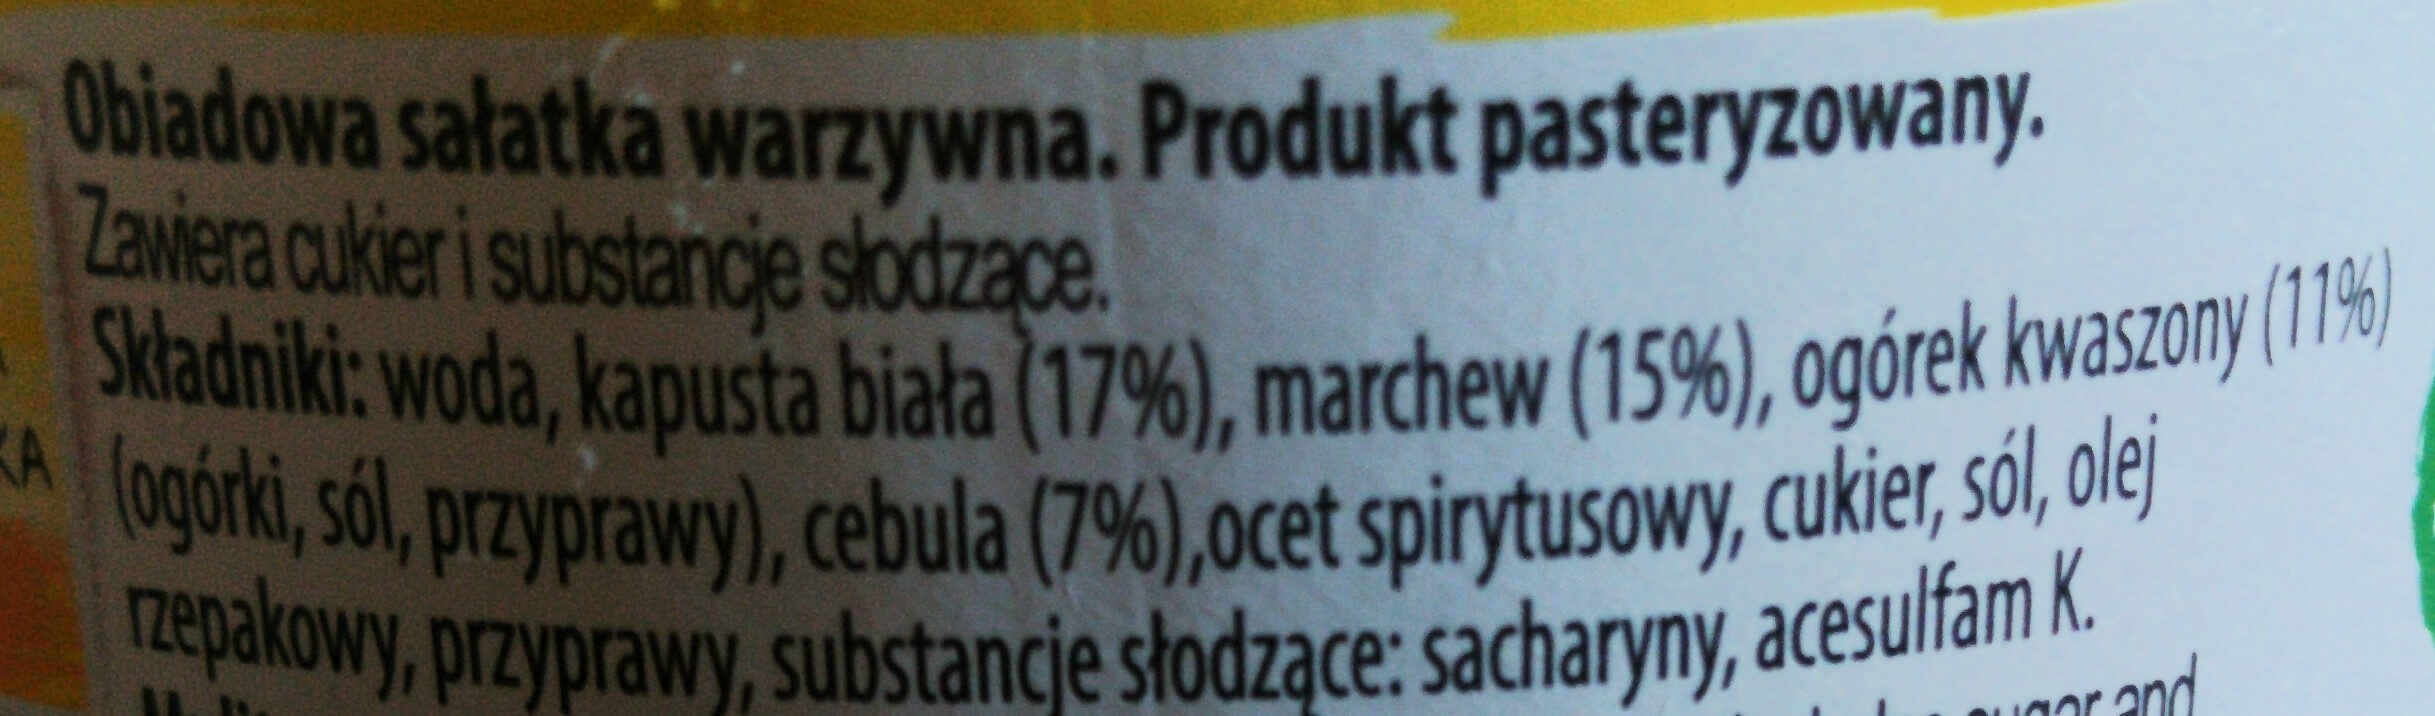 Obiadowa sałatka warzywna - Ingredients - pl